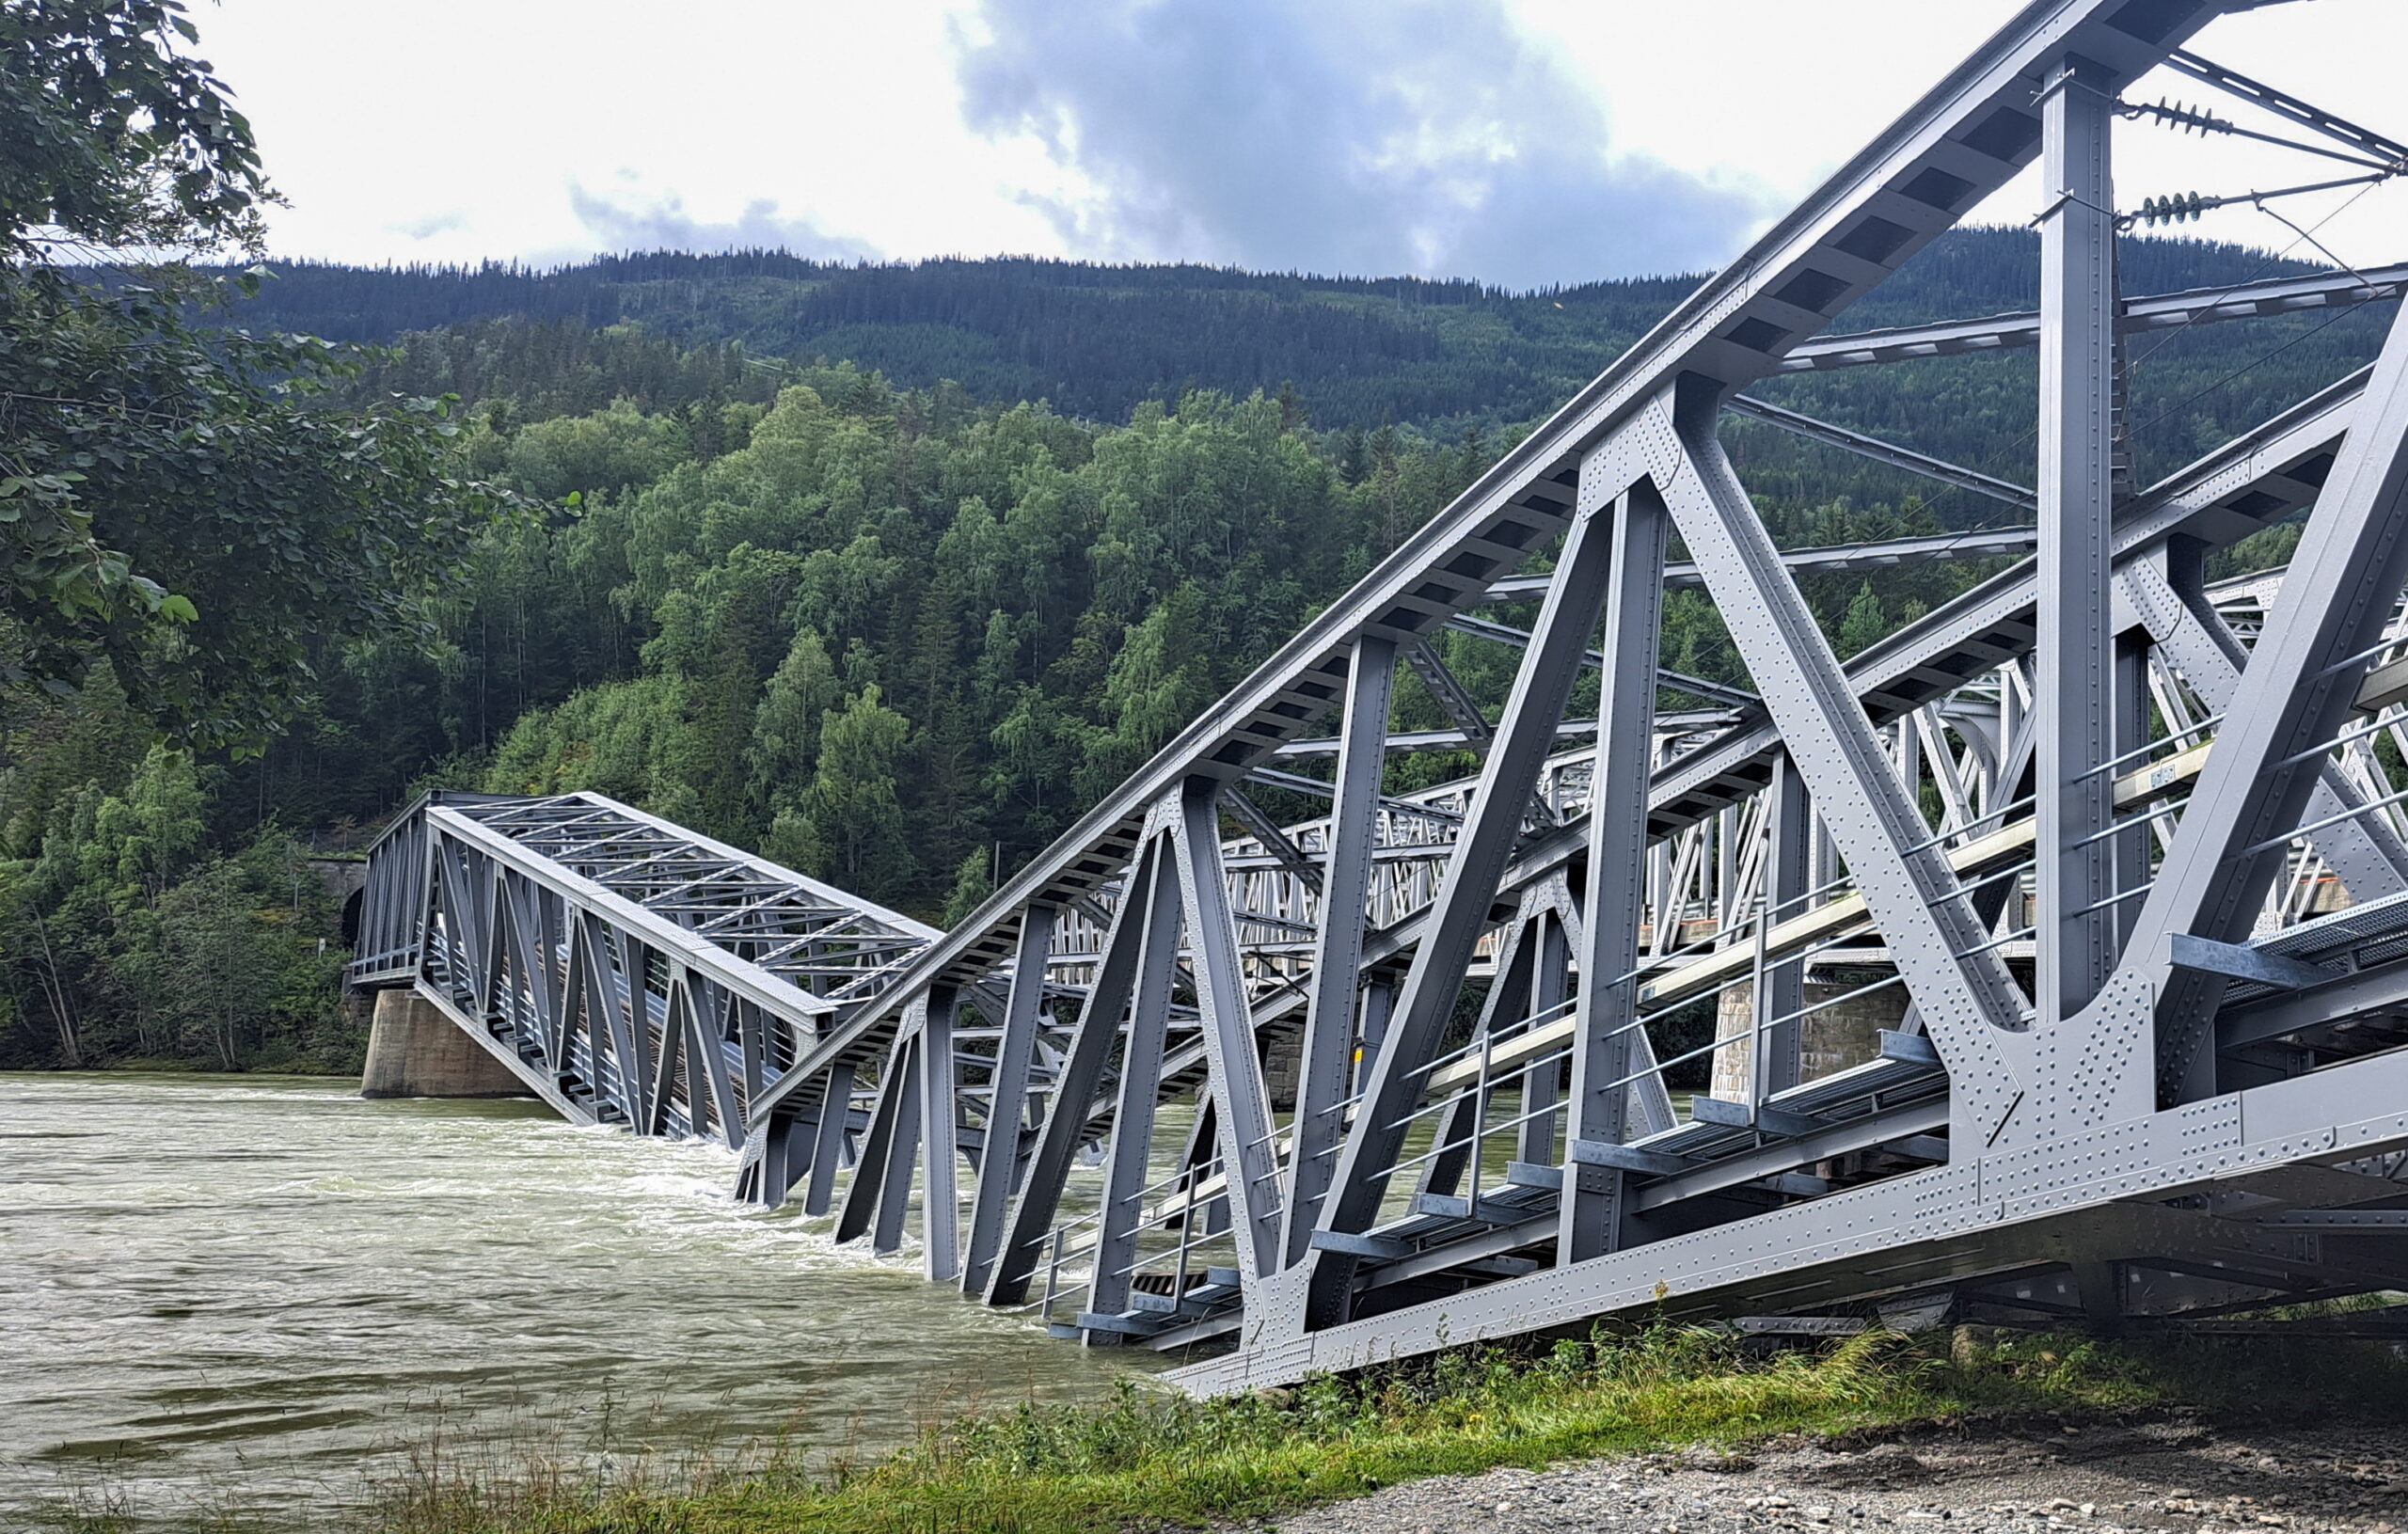 Kατάρρευση σιδηροδρομικής γέφυρας στη Νορβηγία λόγω πλημμυρών – Δεν υπάρχουν θύματα